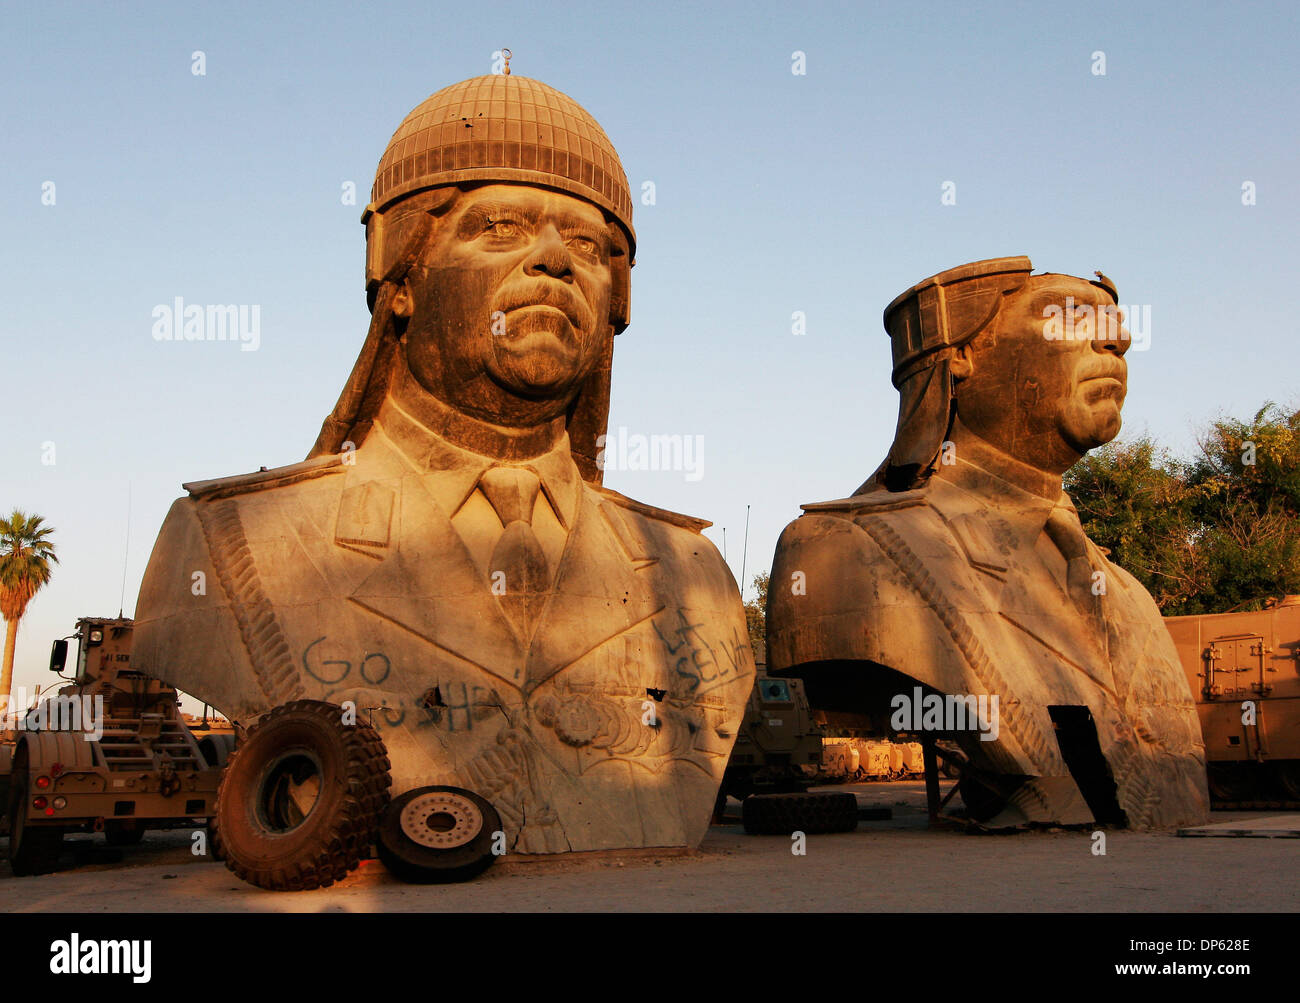 Juin 04, 2006 ; BAGDAD, IRAQ, a renversé les statues de 20 pieds de Saddam Hussein, prises à partir de l'un des palais de l'ancien président irakien, s'asseoir dans un lot de stockage dans la zone verte de Bagdad le 4 juin 2006. Crédit obligatoire : Photo par David Honl/ZUMA Press. (©) Copyright 2006 by David Honl Banque D'Images